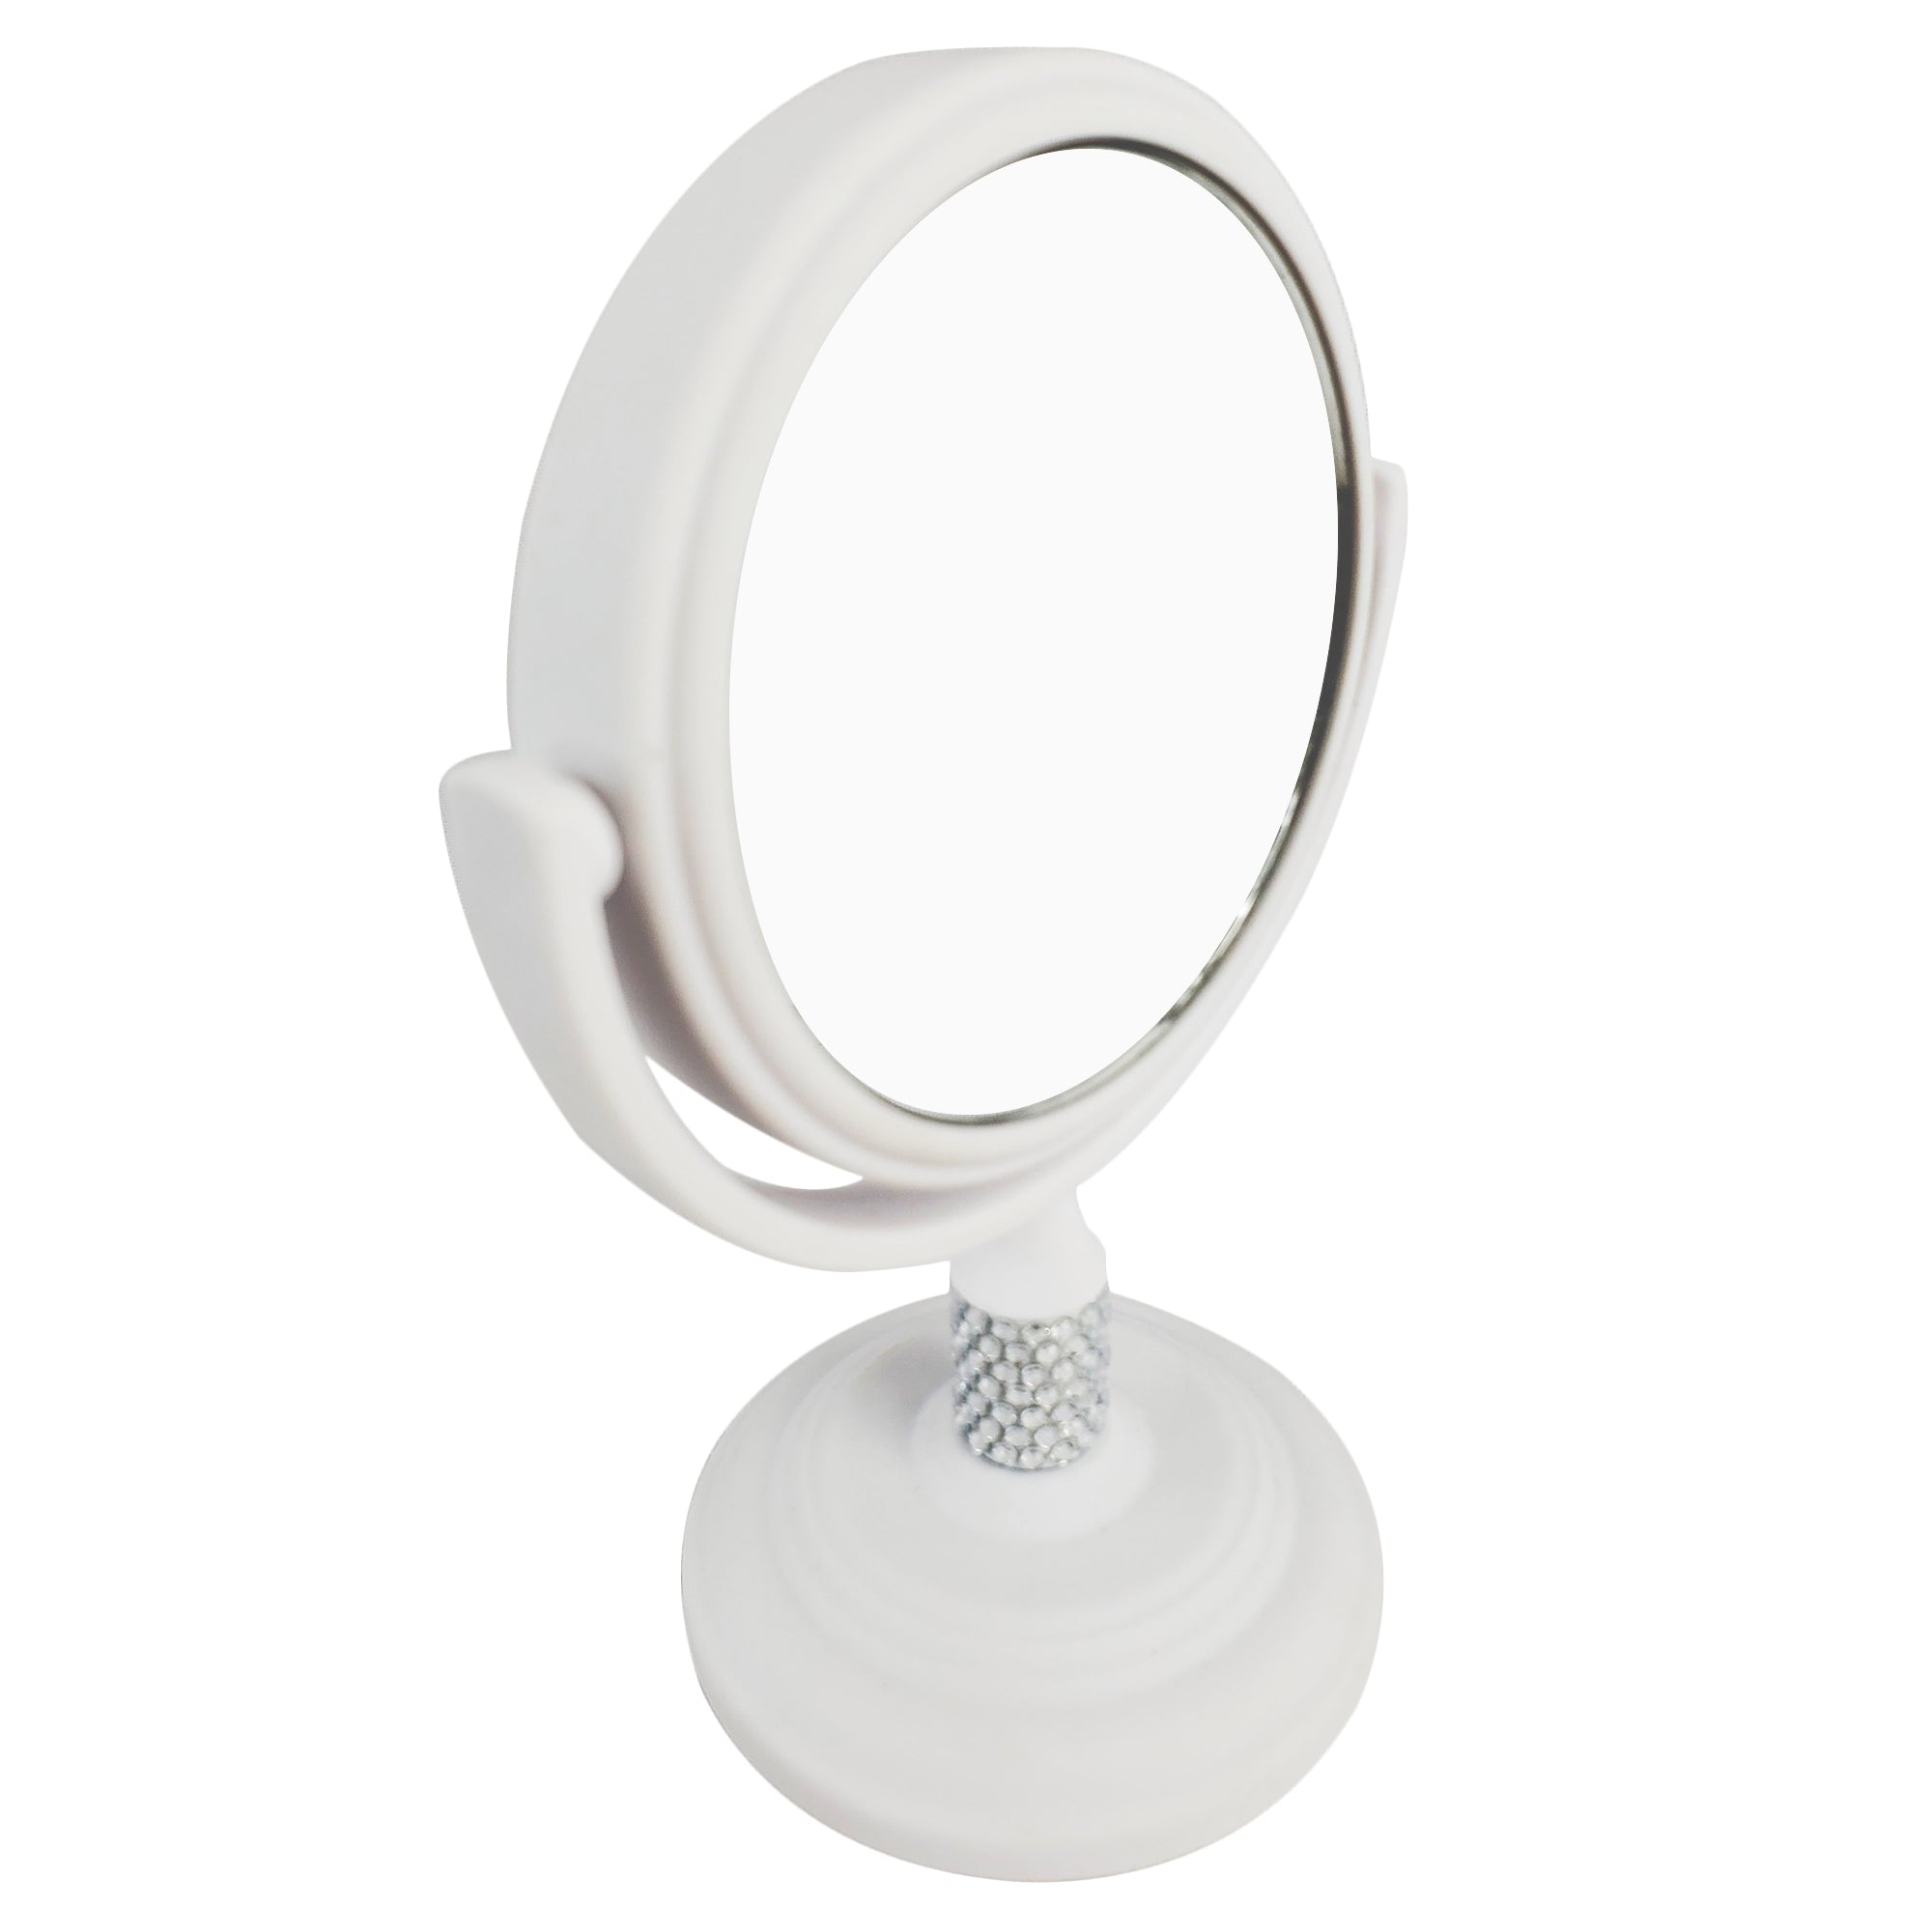 Mini Makeup Magnifying Vanity Mirror White Ceramic Base (M990)